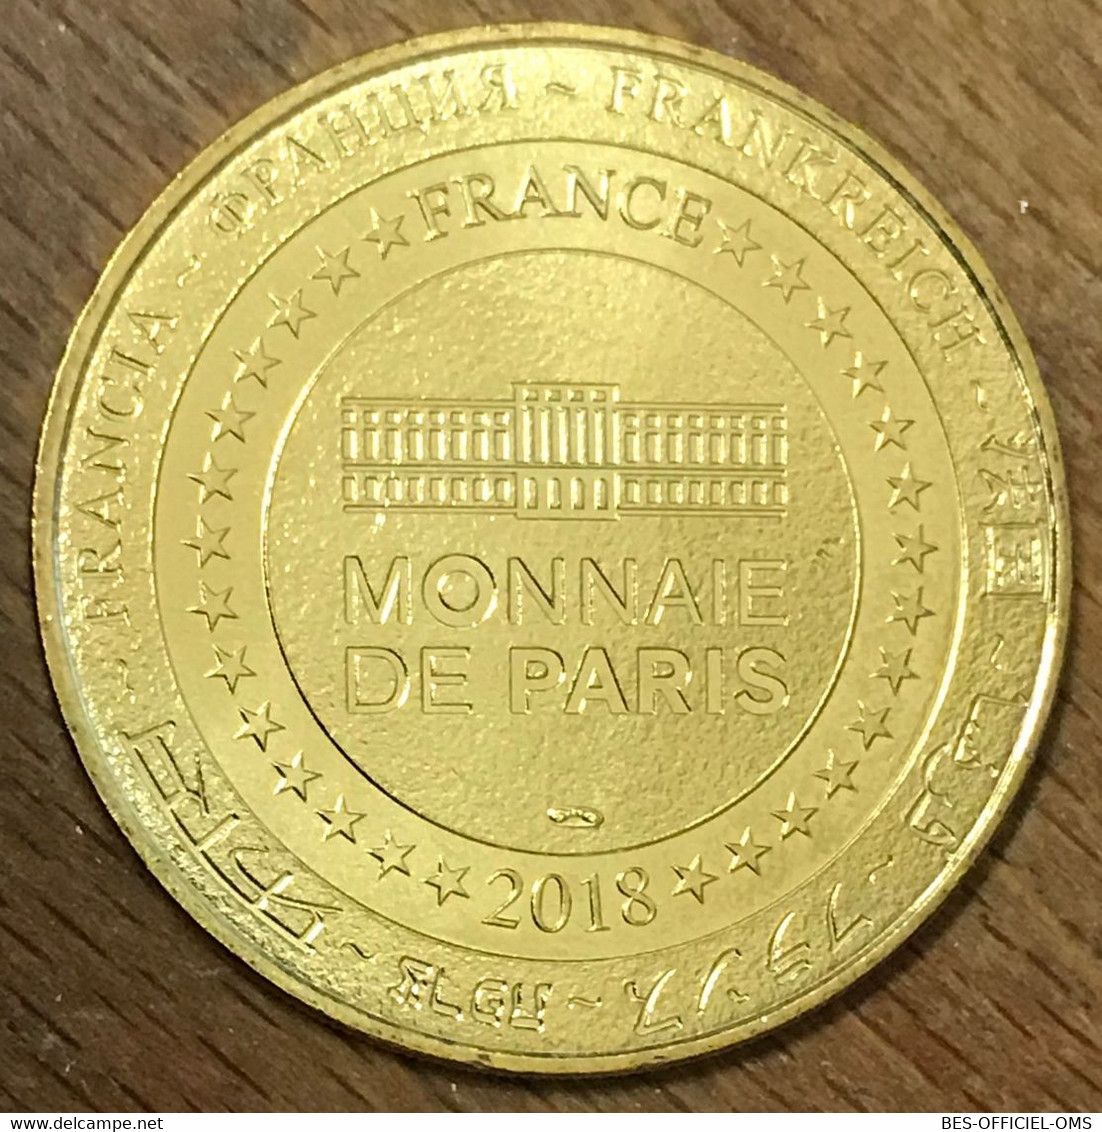 77 DISNEYLAND MINNIE LE CAROUSEL DISNEY MDP 2018 MÉDAILLE SOUVENIR MONNAIE DE PARIS JETON TOURISTIQUE MEDALS COIN TOKENS - 2018